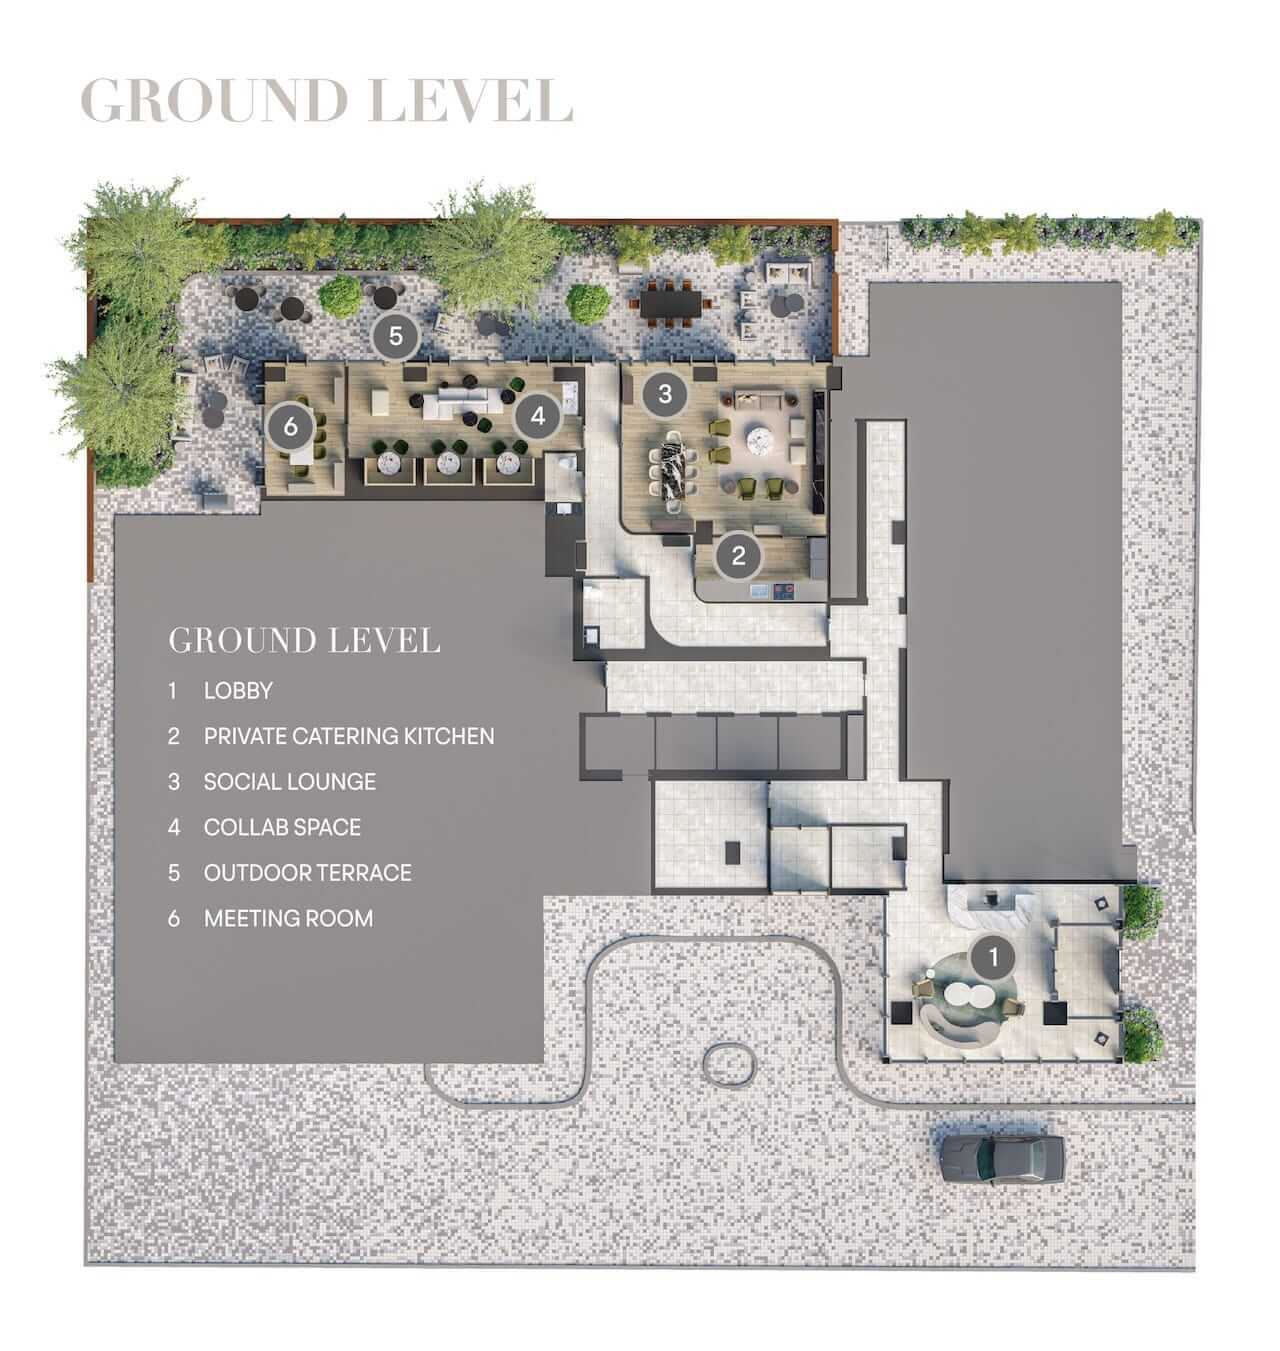 Rendering of Olive Residences ground floor plan